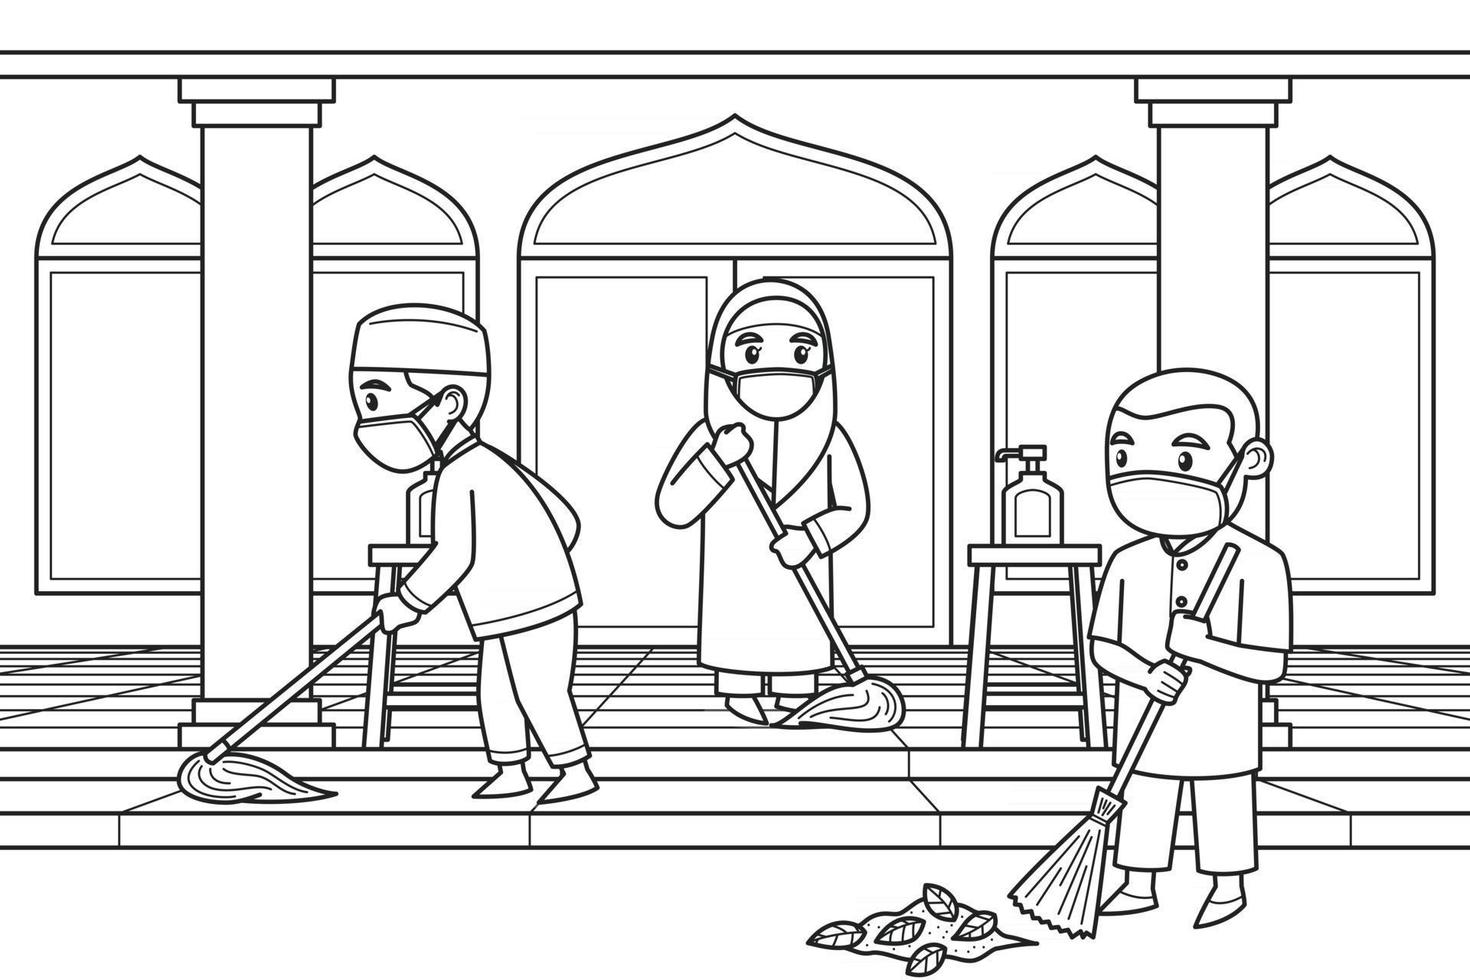 crianças limpando o pátio da mesquita usando máscaras. vetor. livro de colorir. vetor